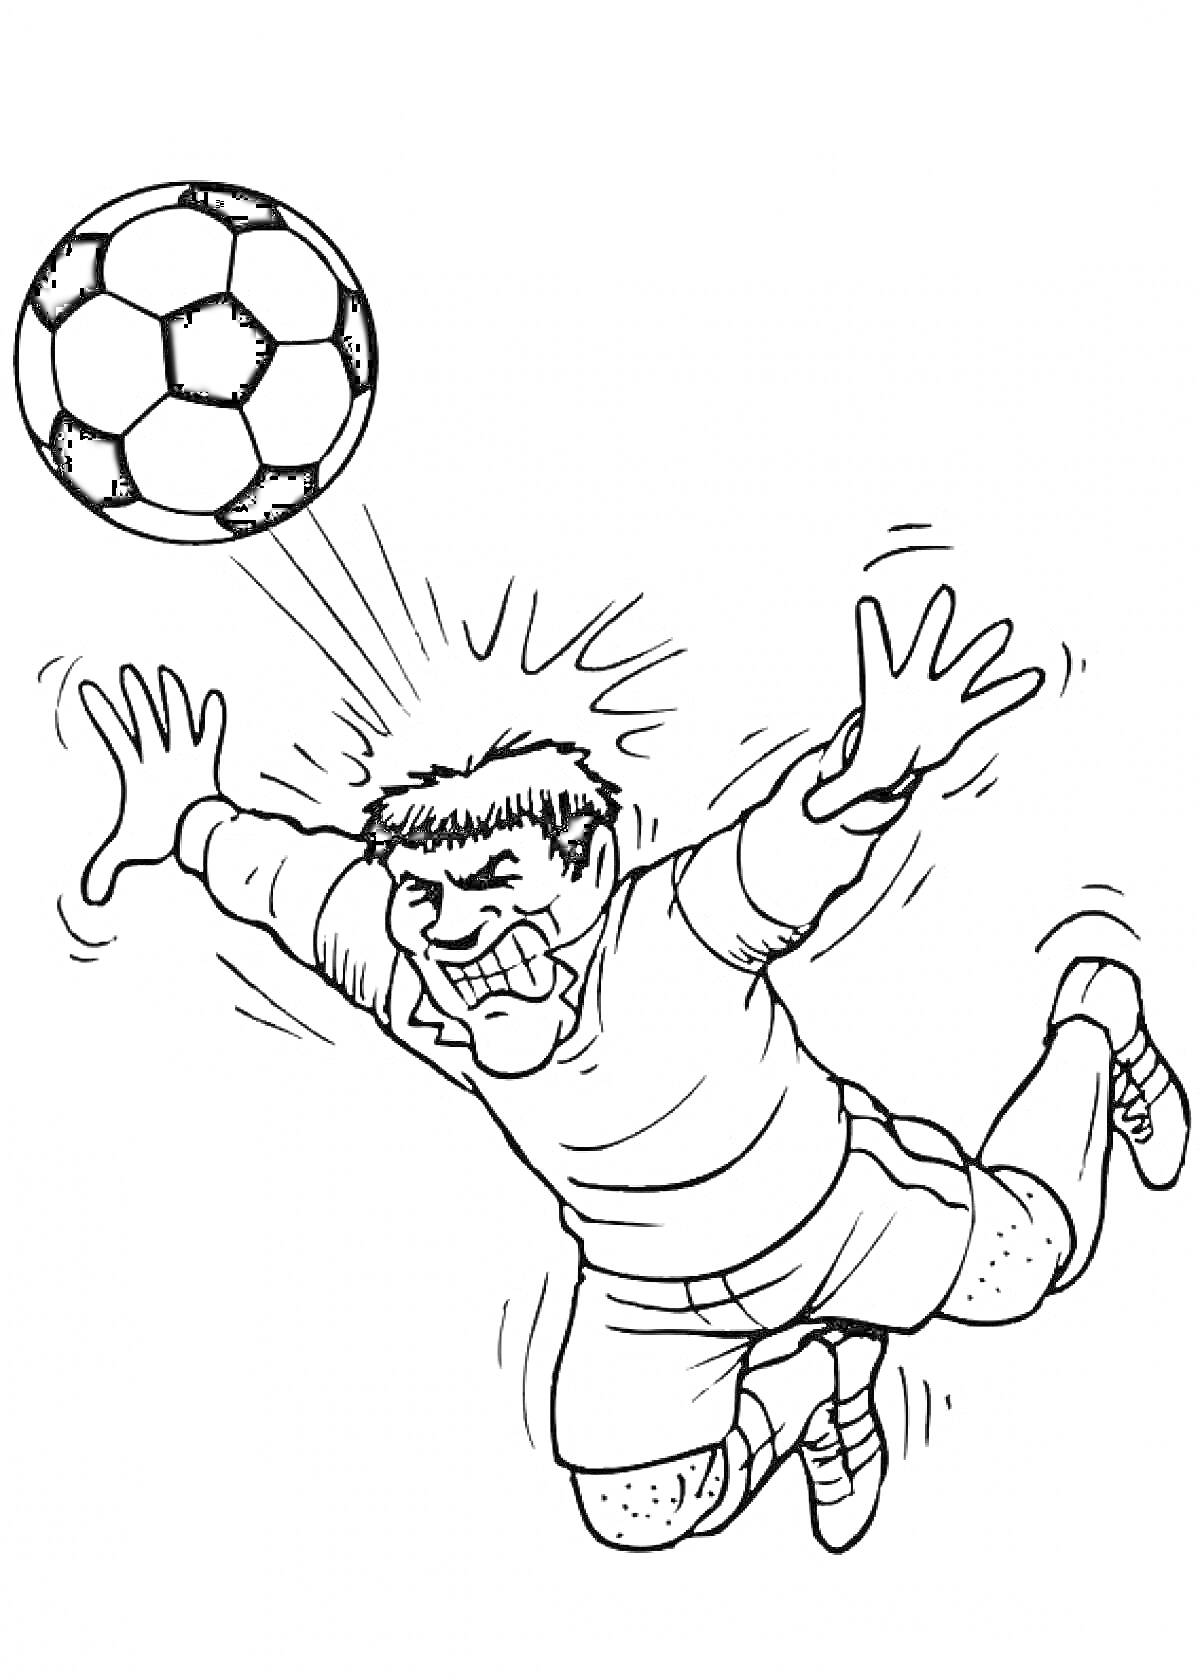 Футболист в прыжке отбивает мяч головой